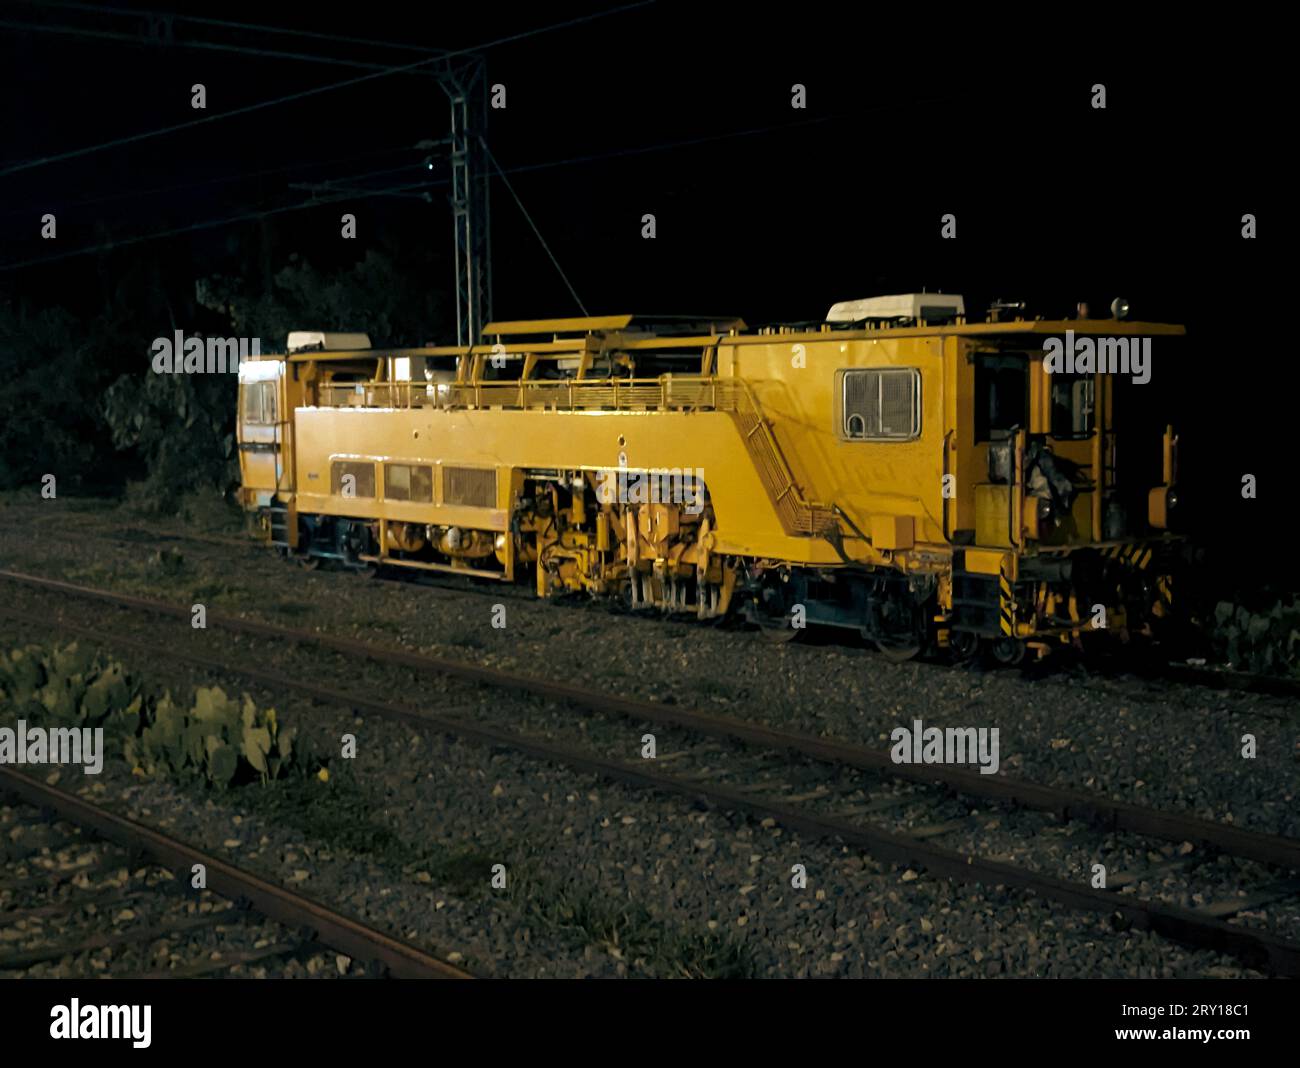 Ein alter alter gelber Lokomotiven-Dieselmotor eines Zuges auf dem Gleis in der Nähe eines Bahnhofs bei Nacht Stockfoto